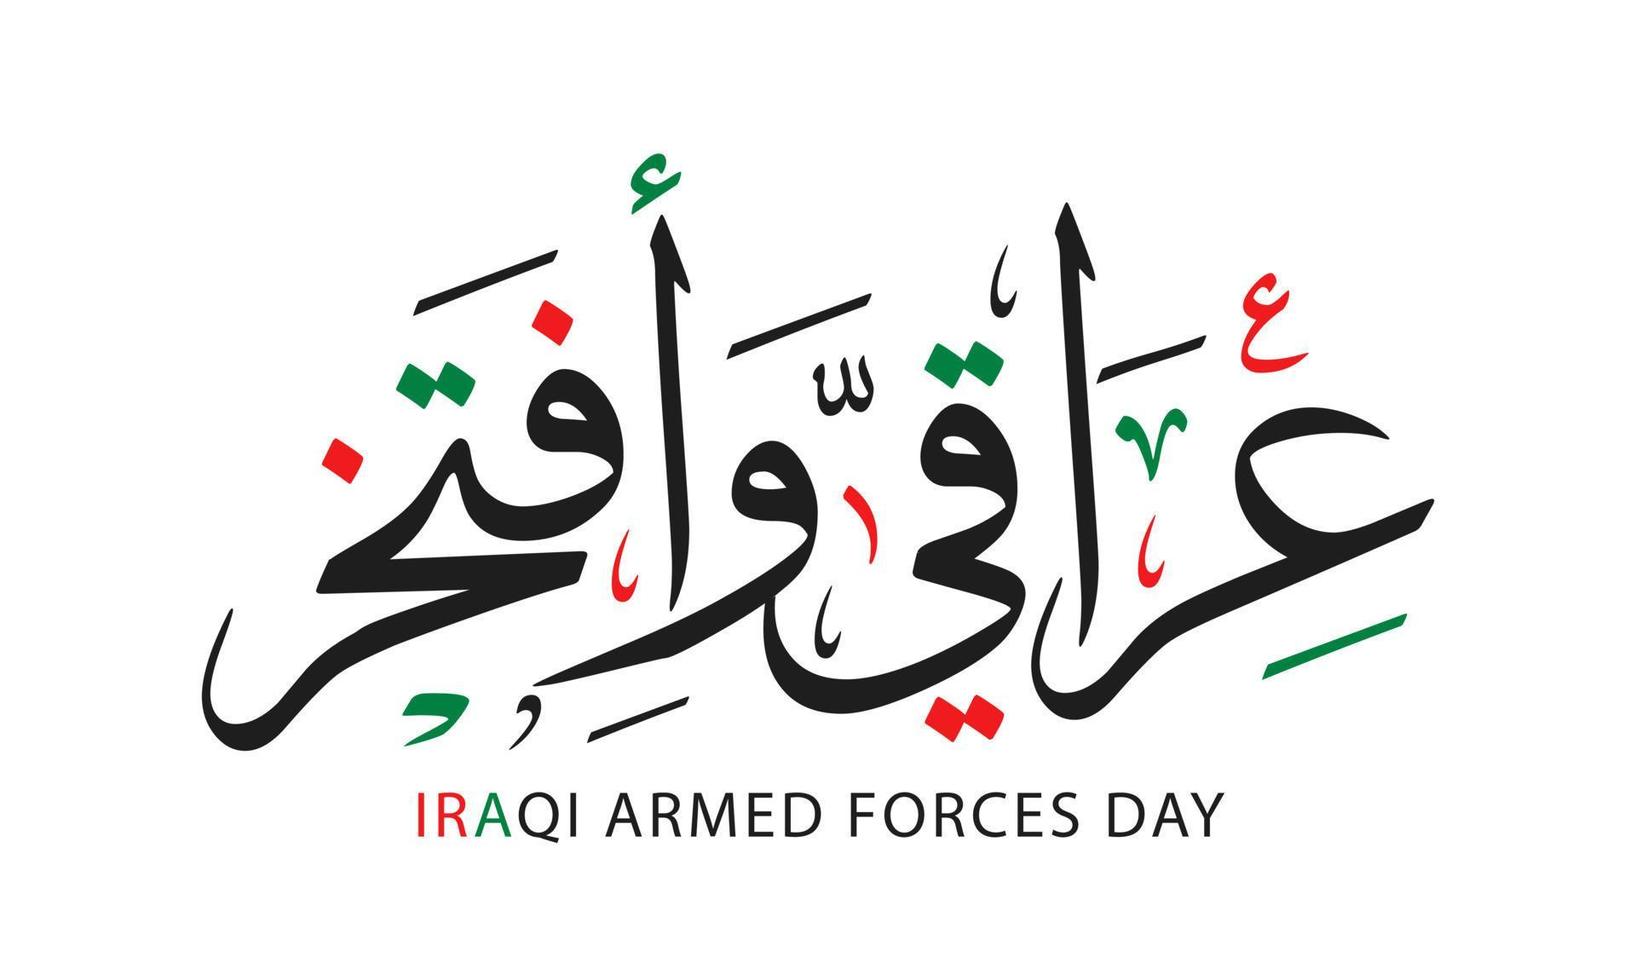 Iraks väpnade styrkor dag design översättning arabisk kalligrafi nationaldag vektorillustration vektor